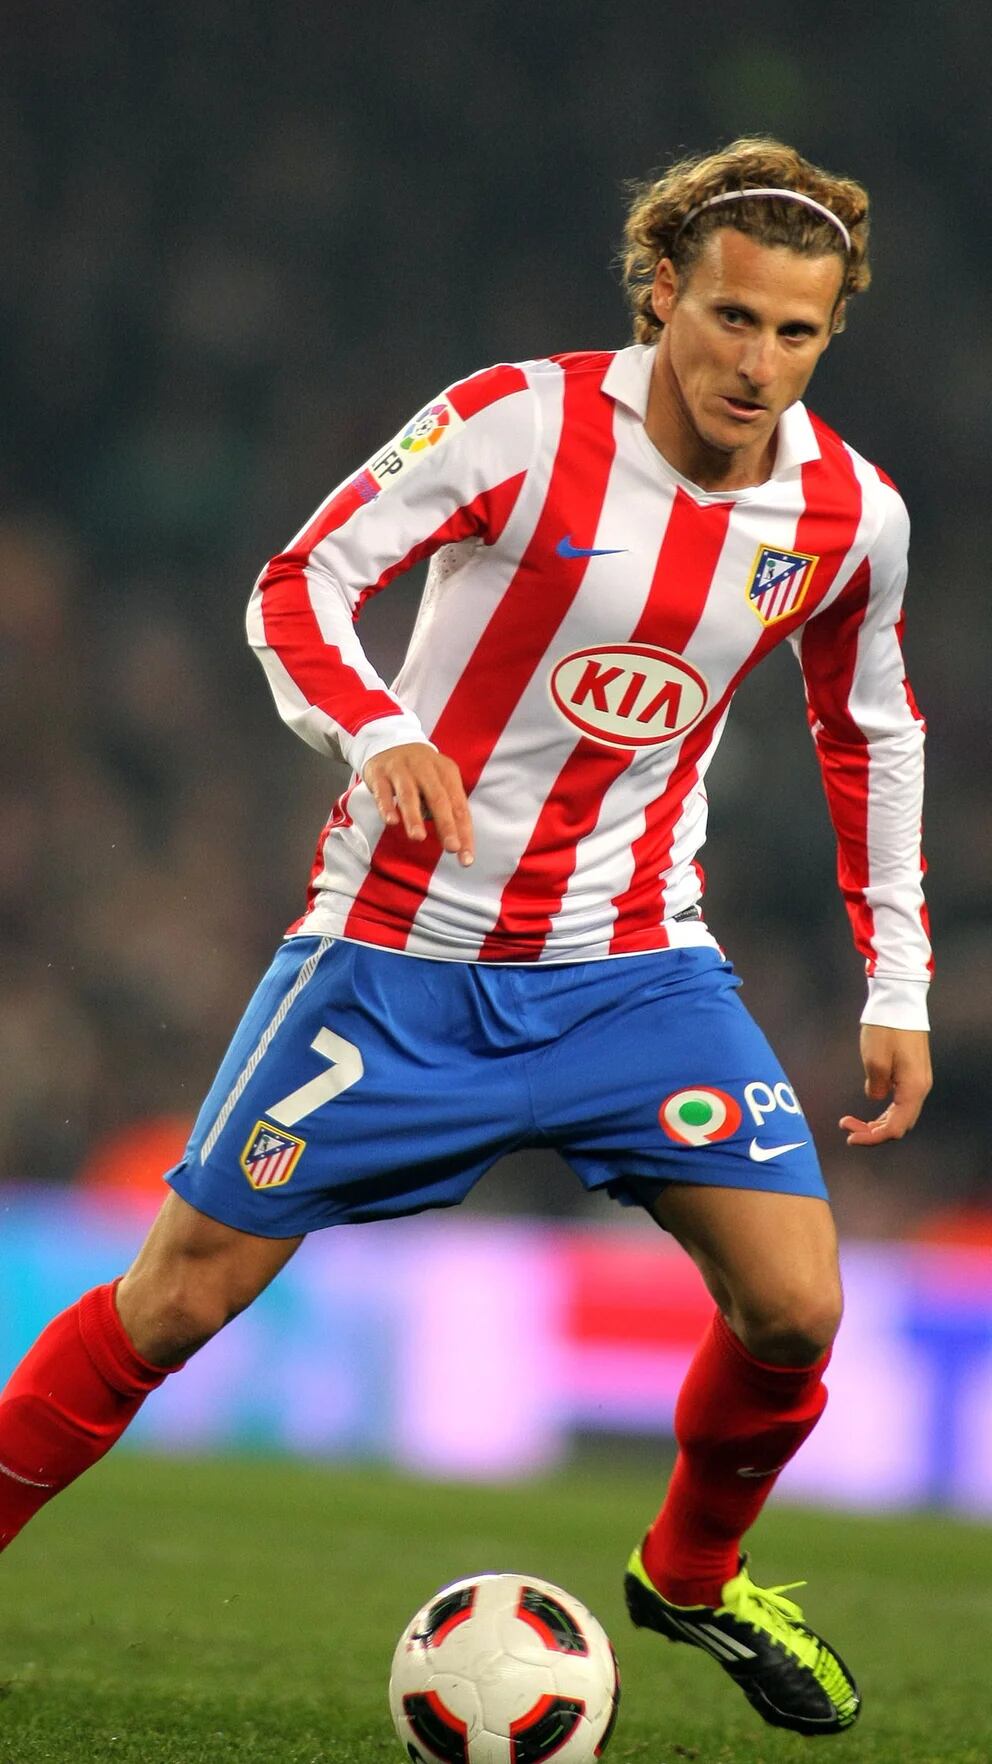 Diego Forlán salió del retiro para jugar en una liga de fútbol